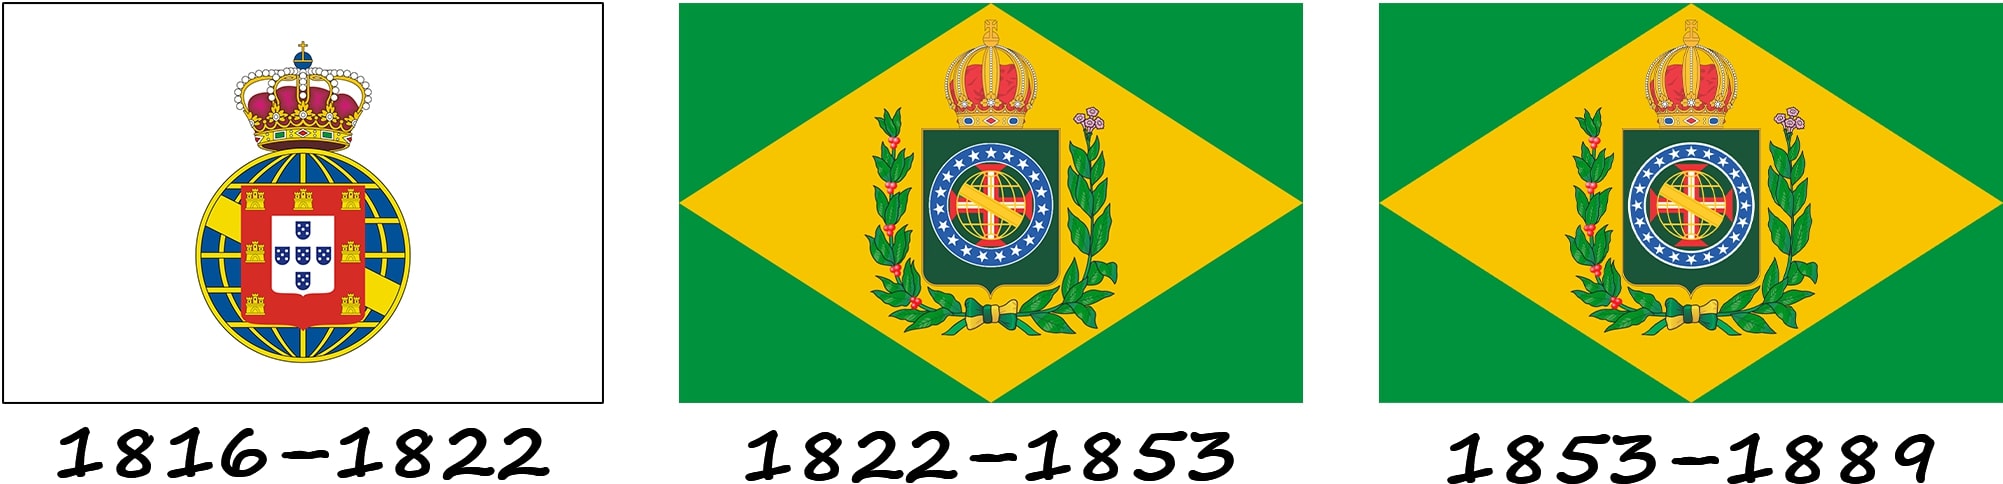 Histoire du drapeau avant la création de la République du Brésil